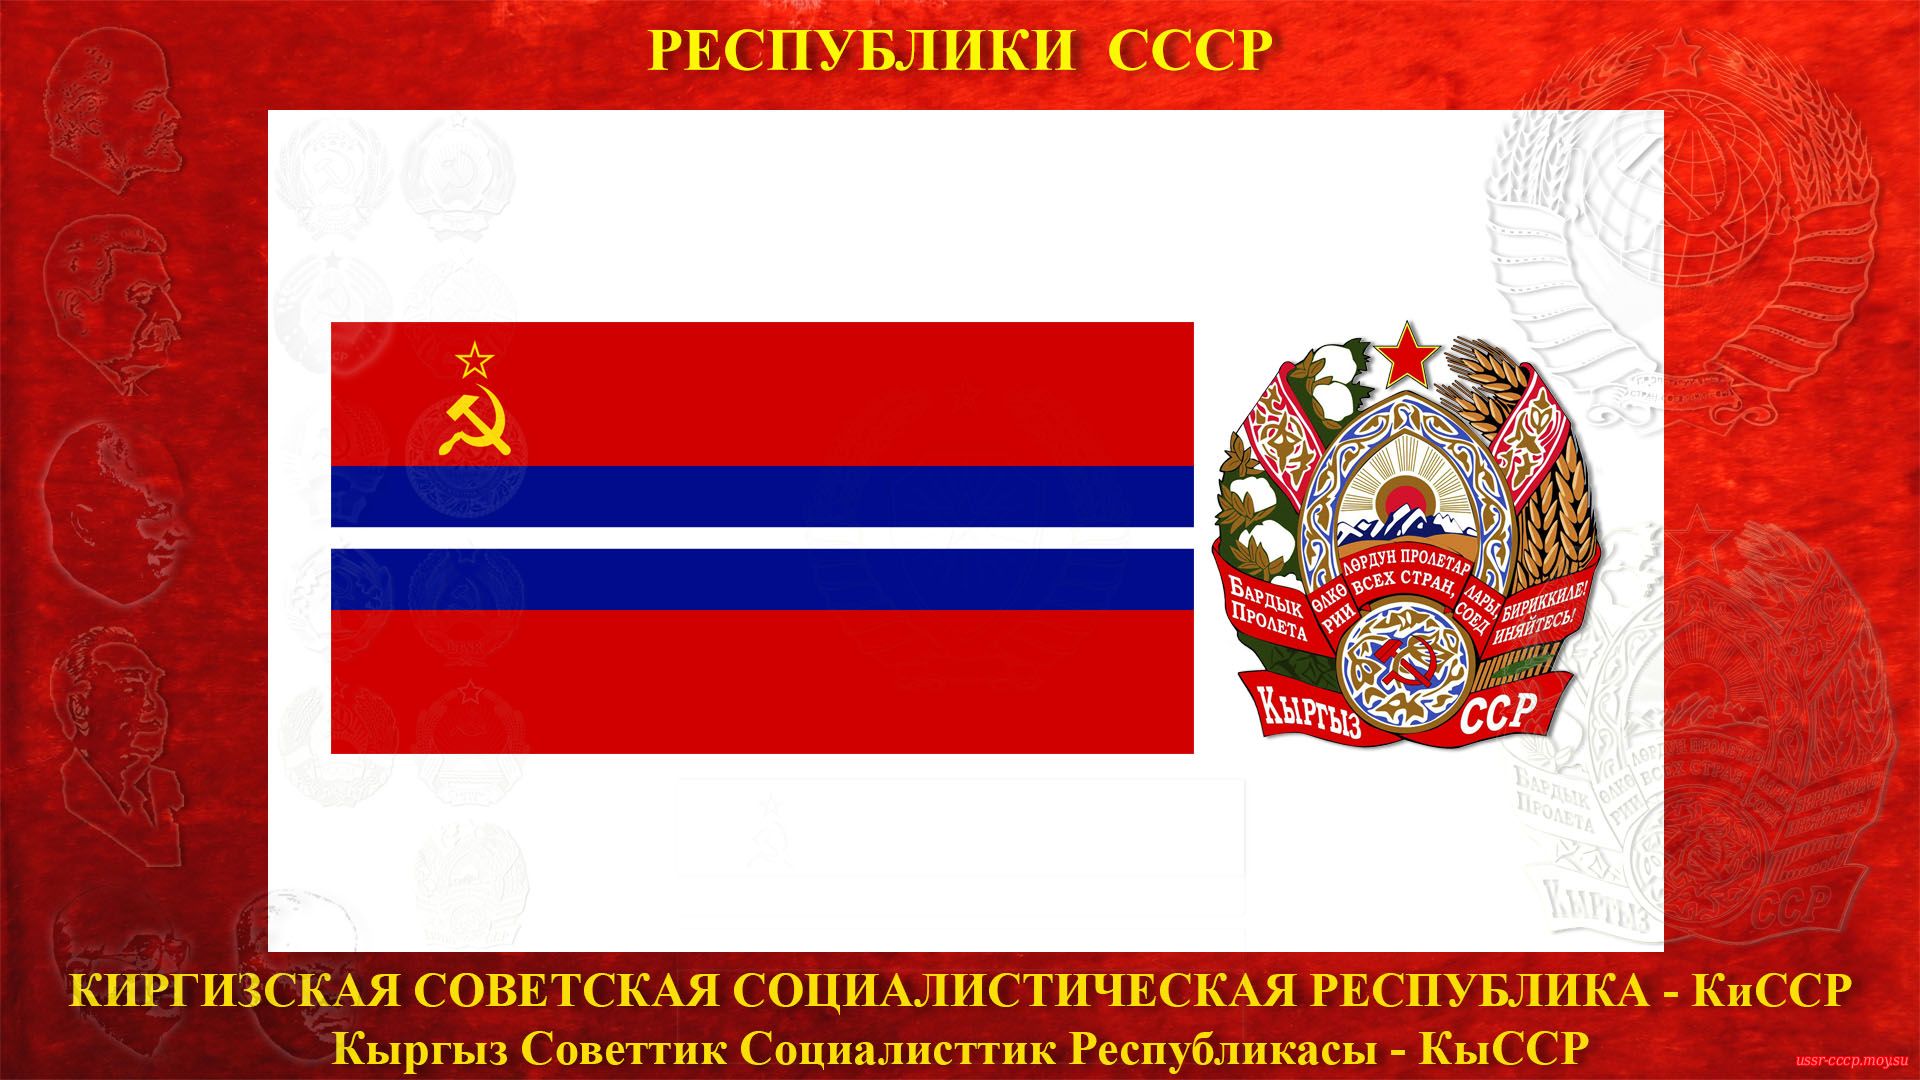 КиССР — Киргизская Советская Социалистическая Республика (05.12.1936 — де-юре)